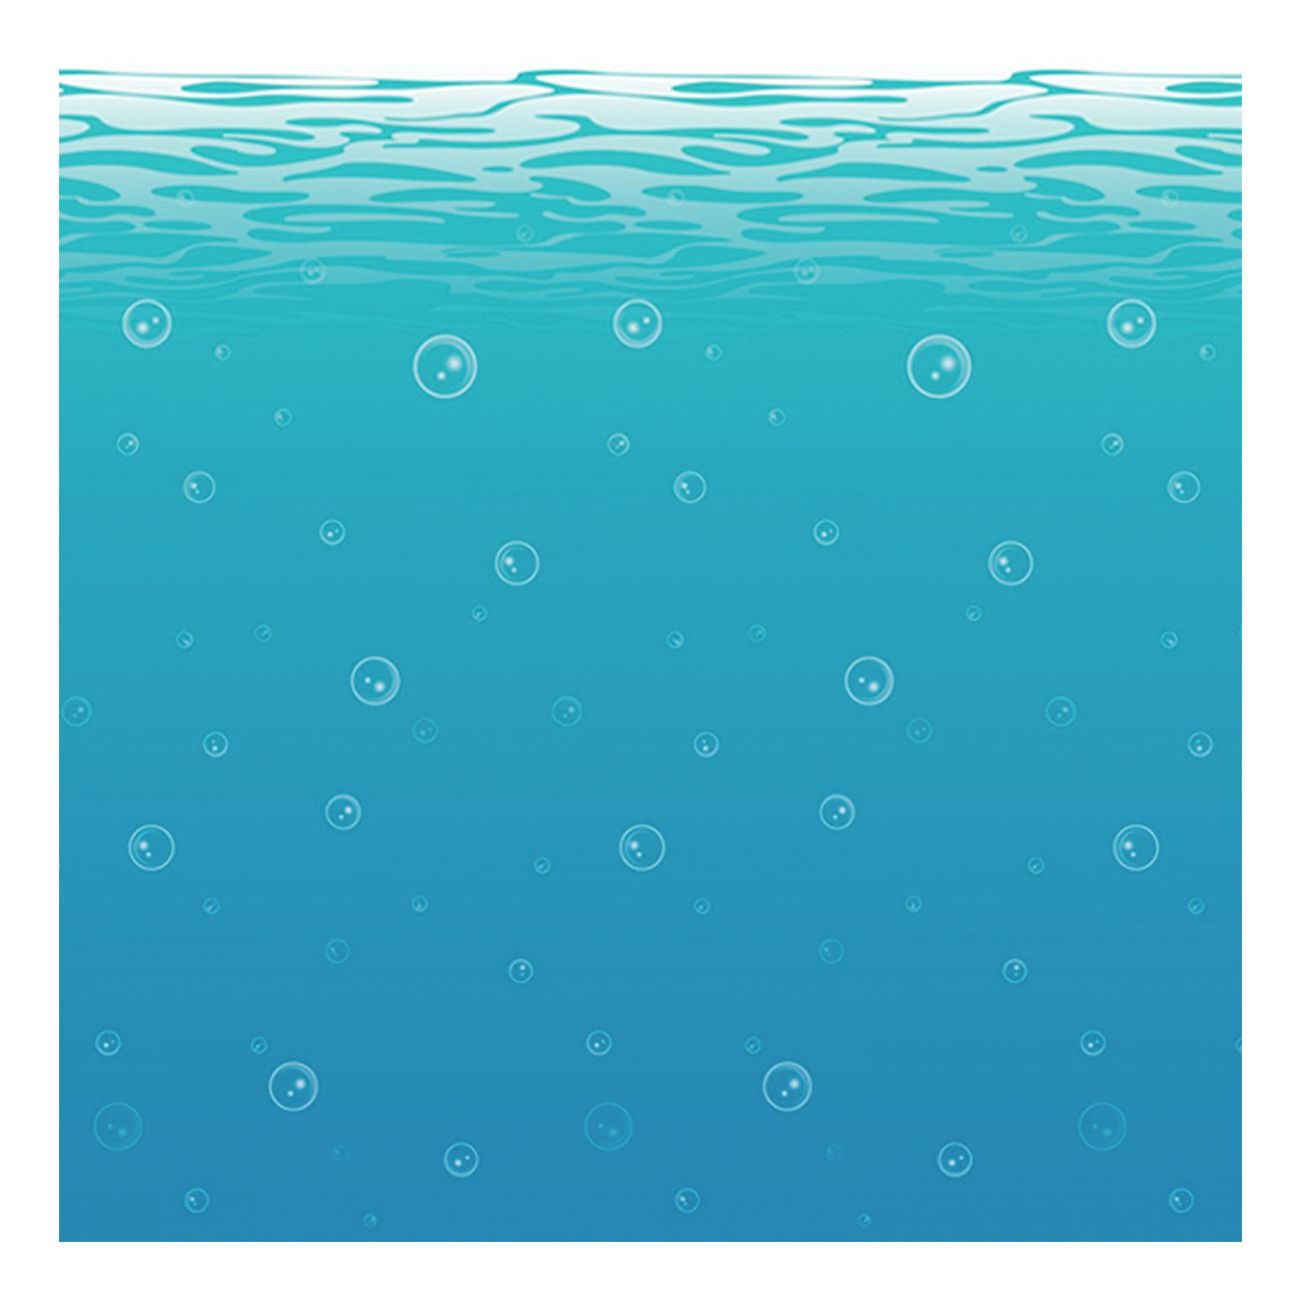 under-vatten-backdrop-1